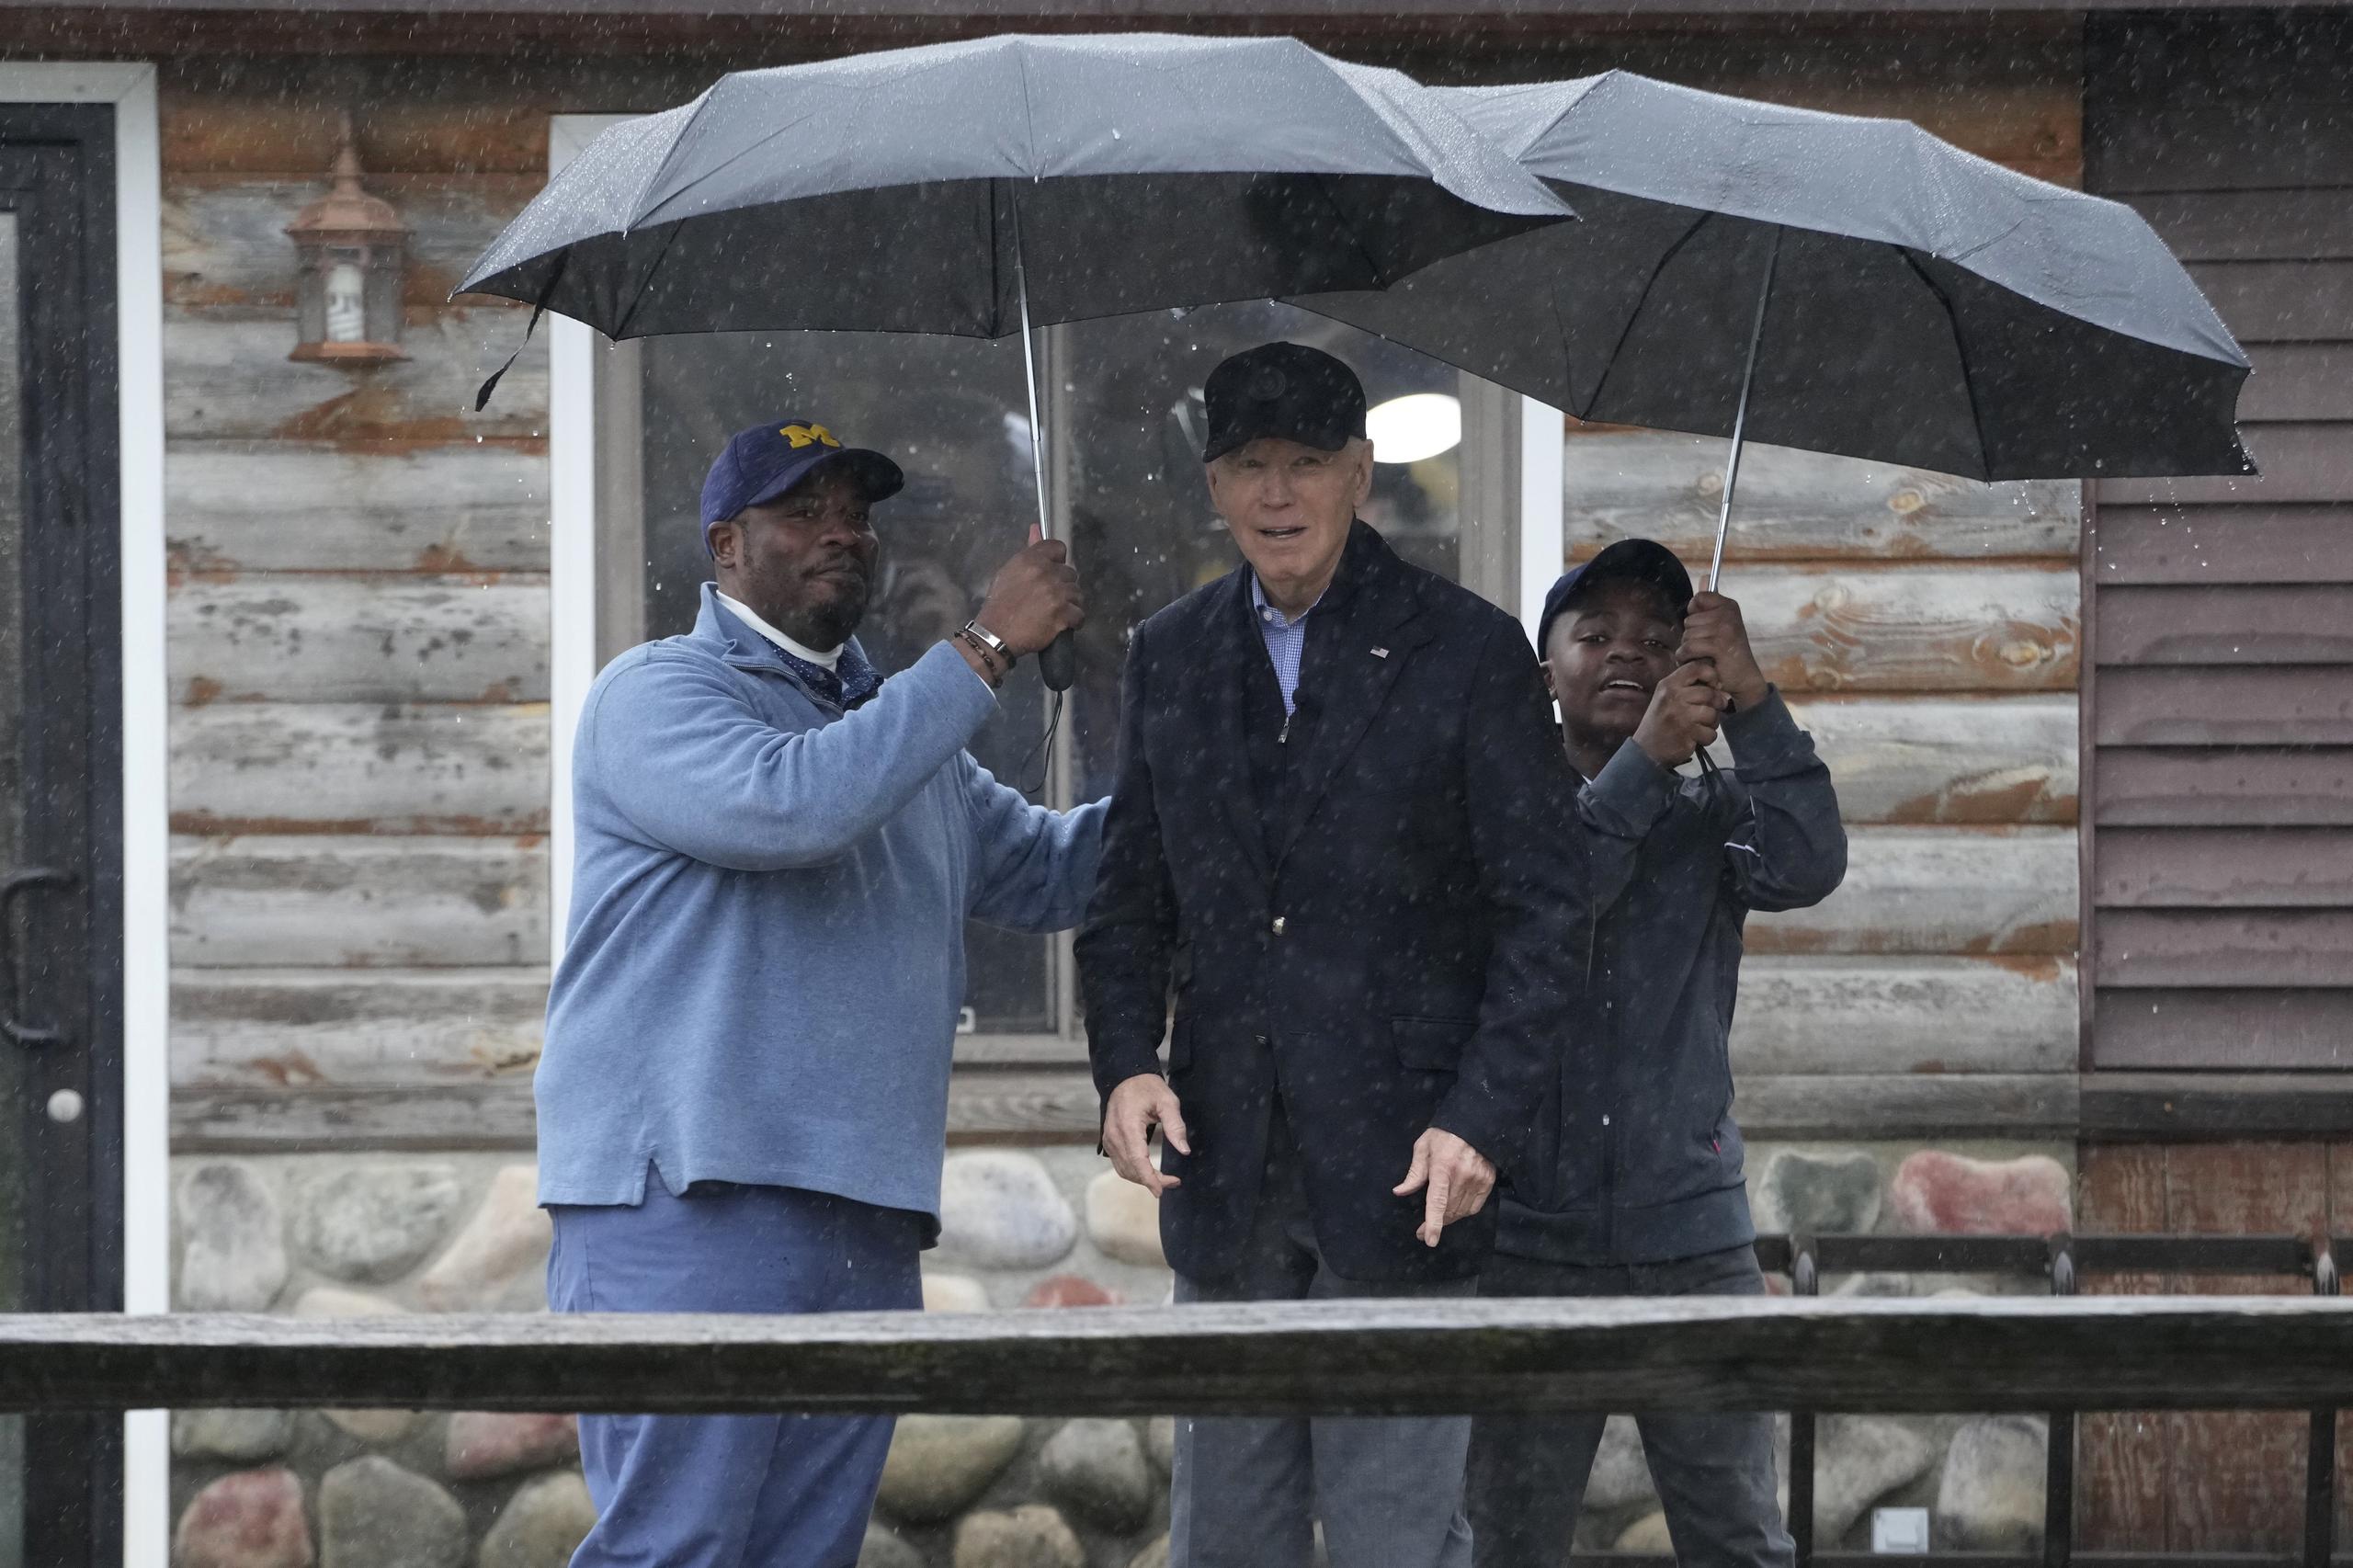 Durante su visita, Biden fue al patio delantero de las casas de dos líderes locales, ambos blancos, y se reunió con una familia negra en un campo de golf.